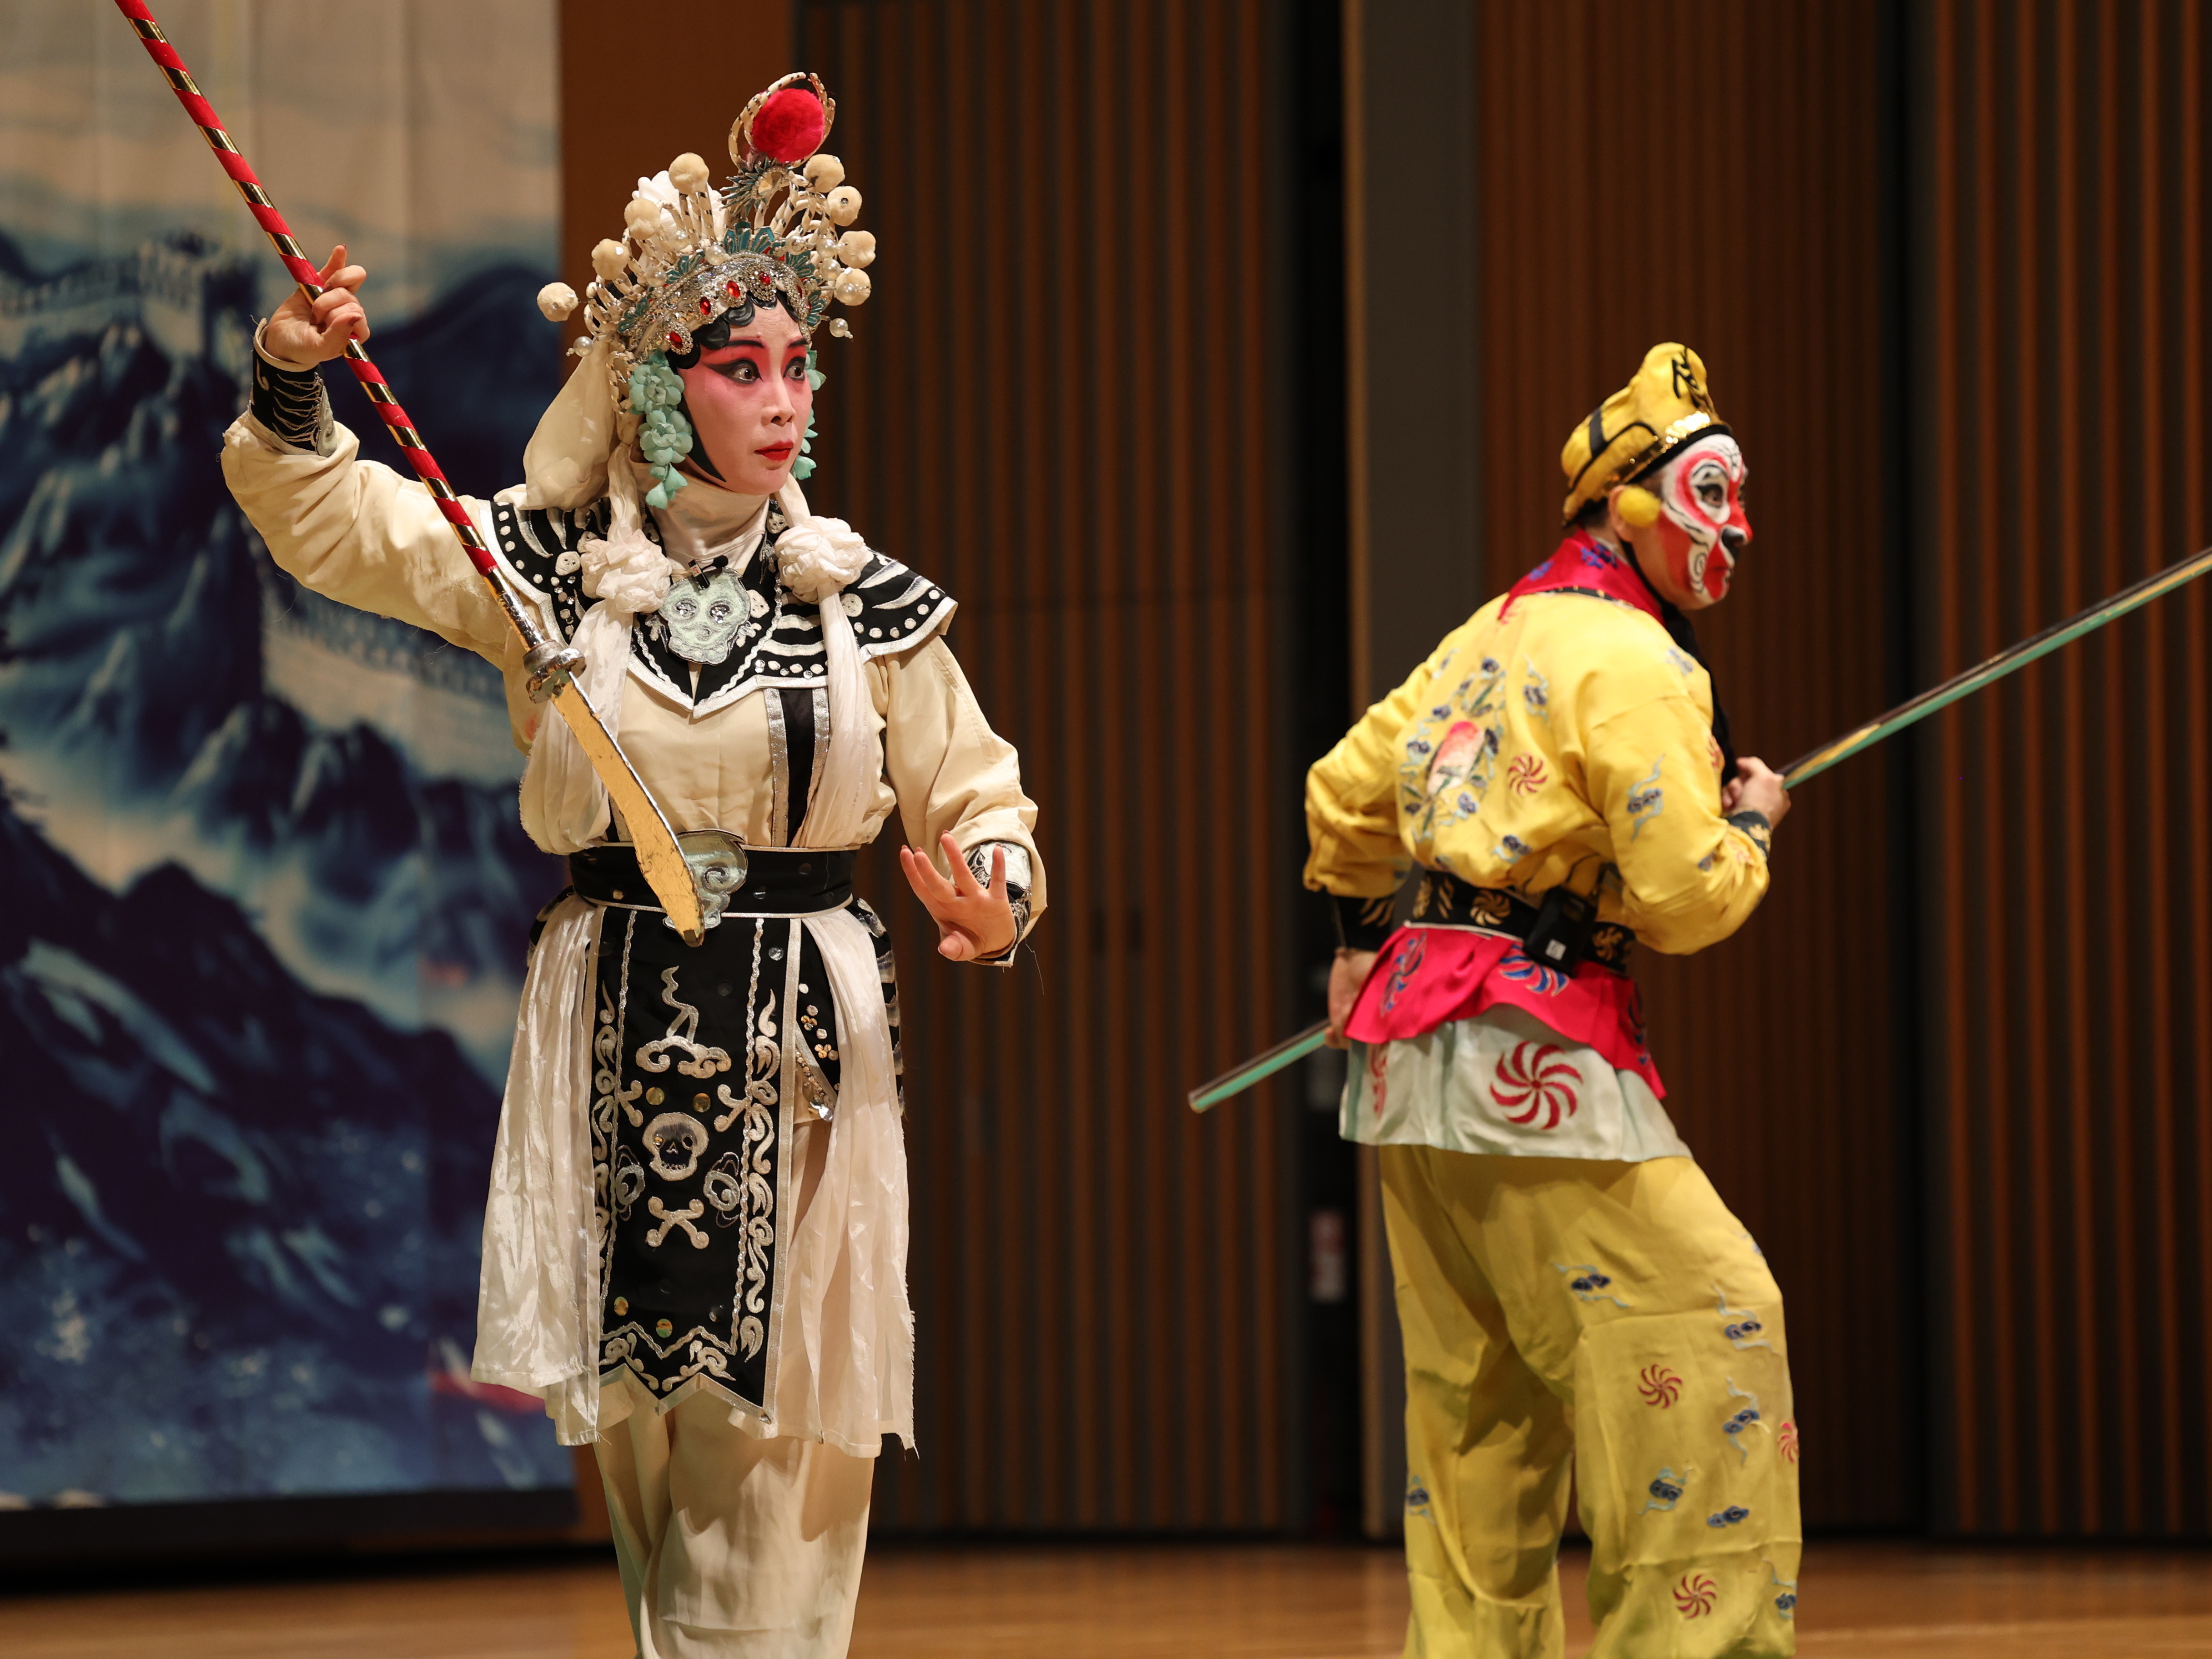 京劇「孫悟空と妖怪の戦い」の一幕